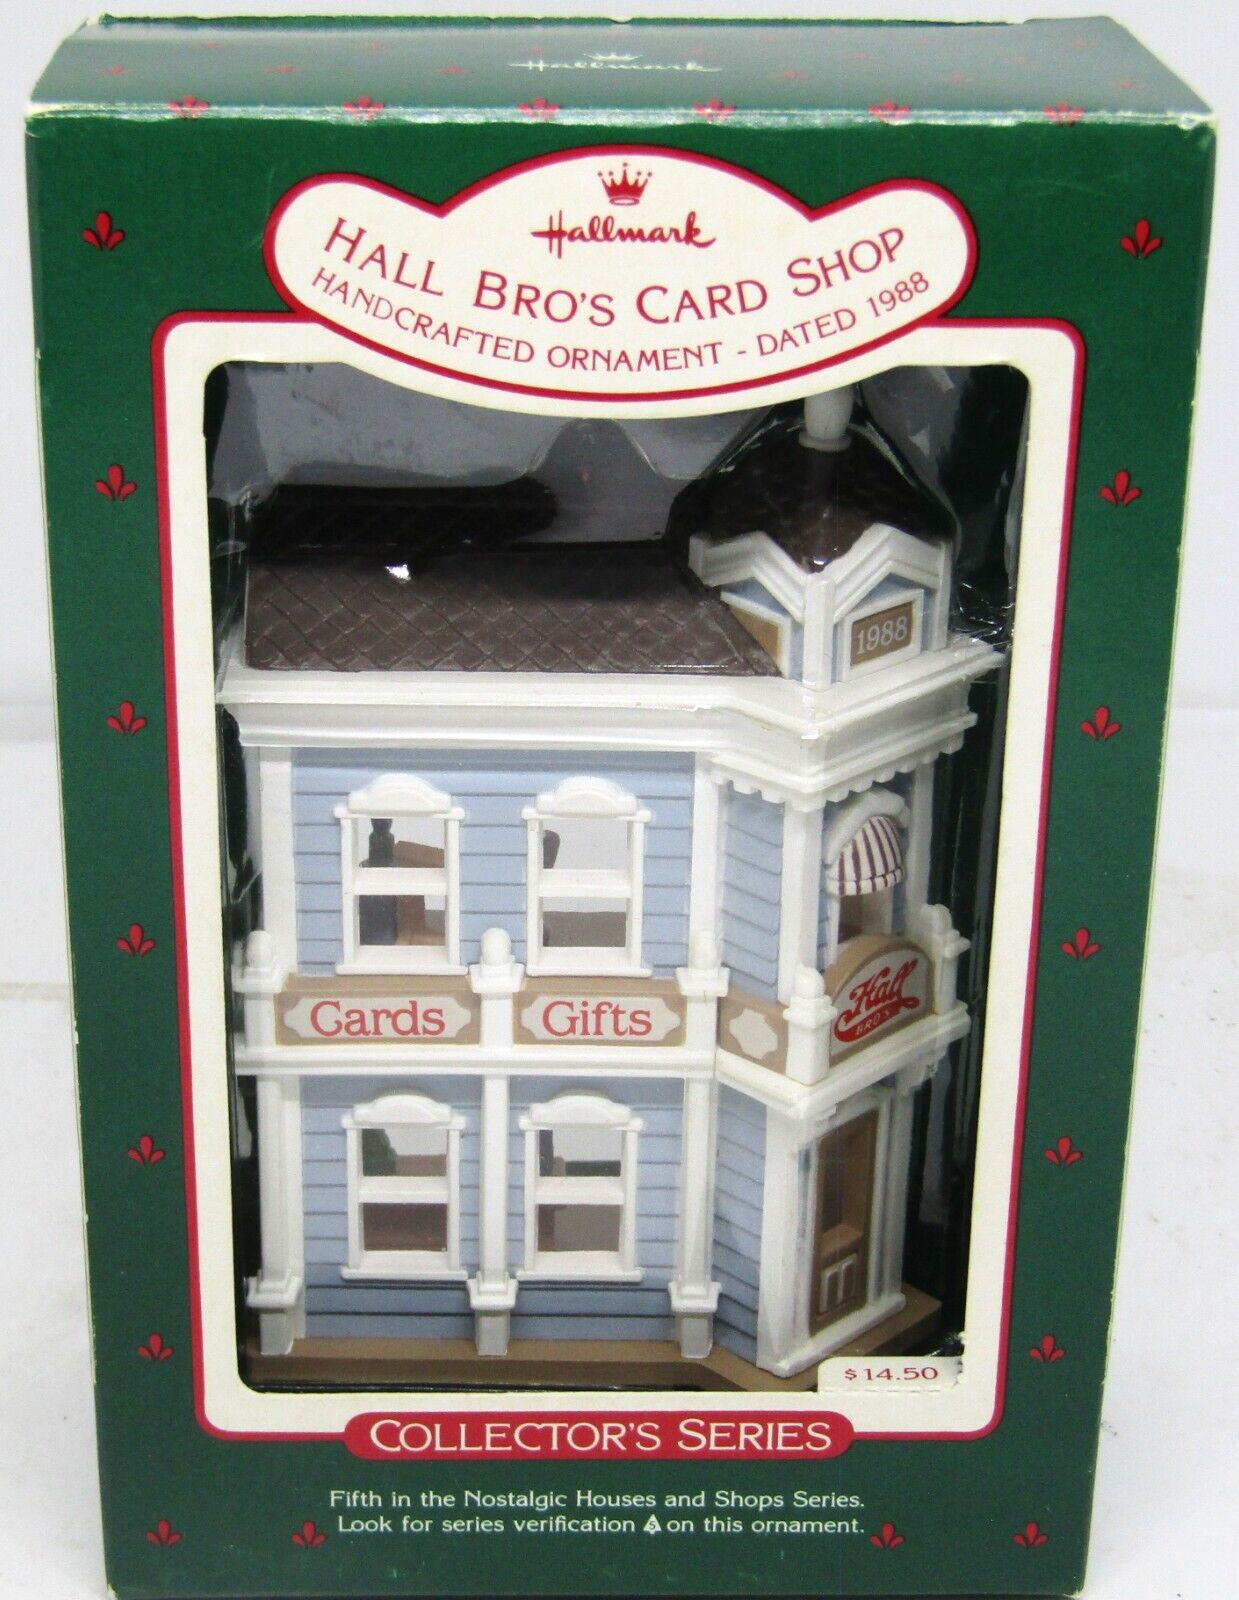 Vintage 1988 Hallmark Hall Bros Card Shop Collector\'s Series Ornament